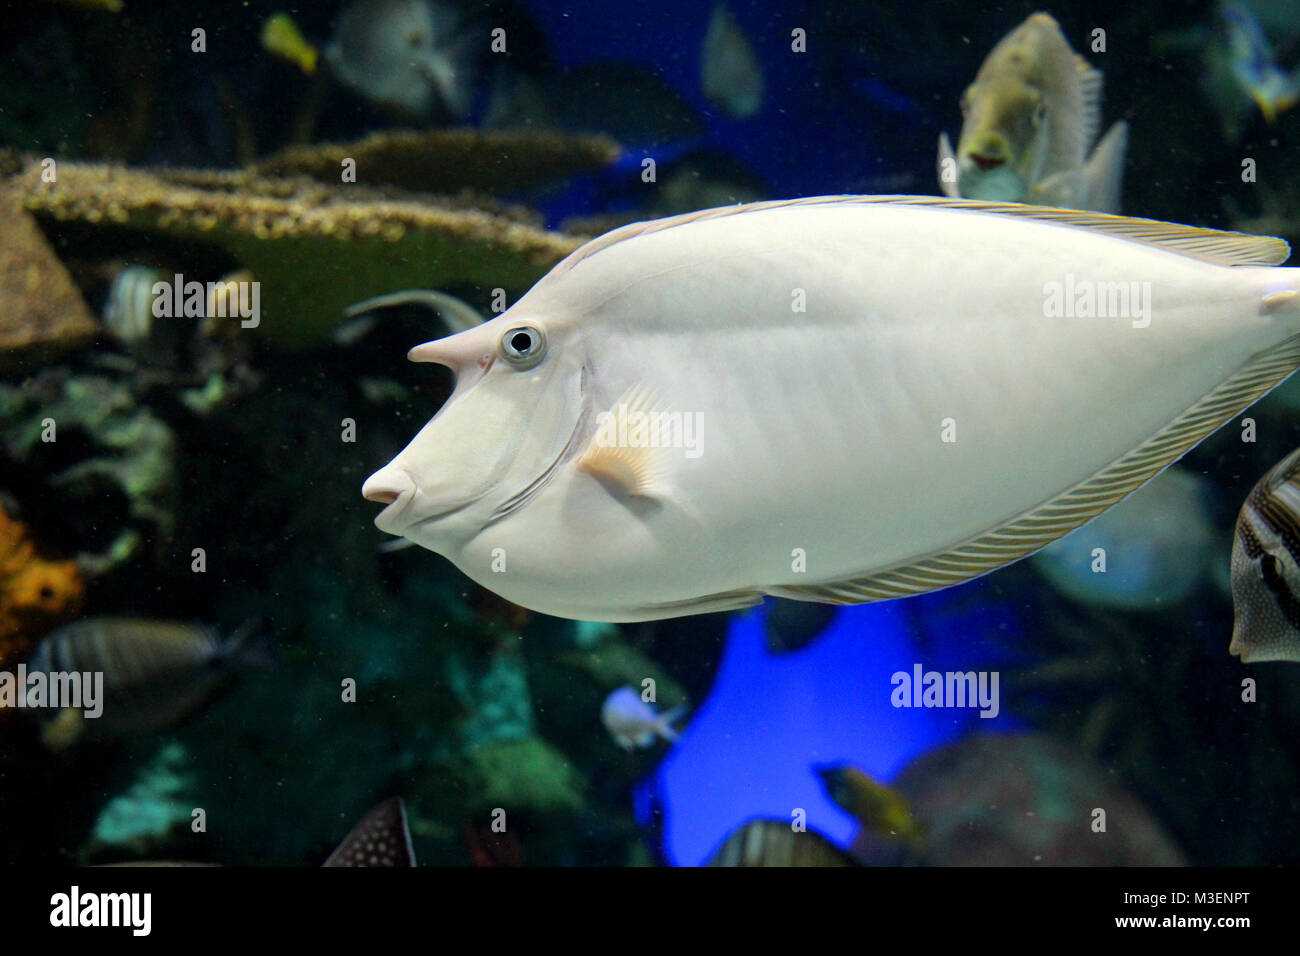 Profilo di pesce immagini e fotografie stock ad alta risoluzione - Alamy